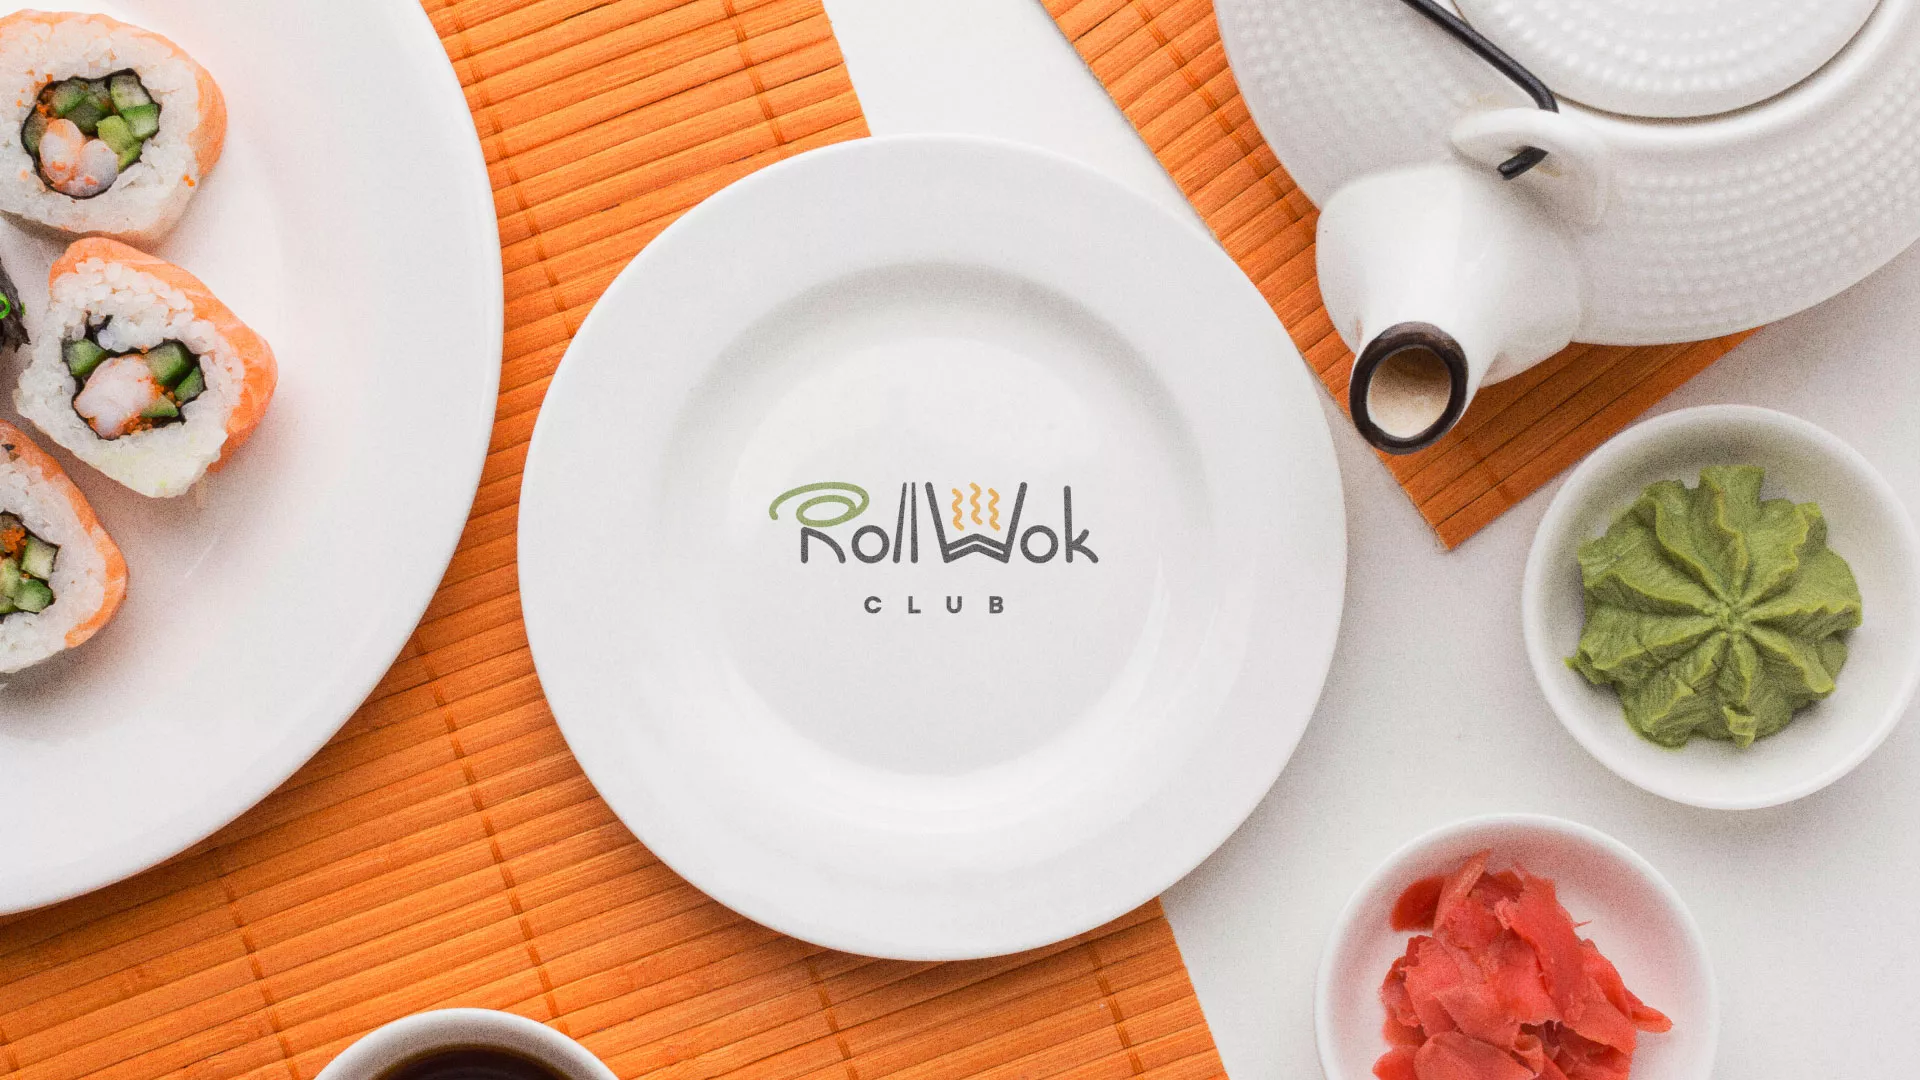 Разработка логотипа и фирменного стиля суши-бара «Roll Wok Club» в Оренбурге